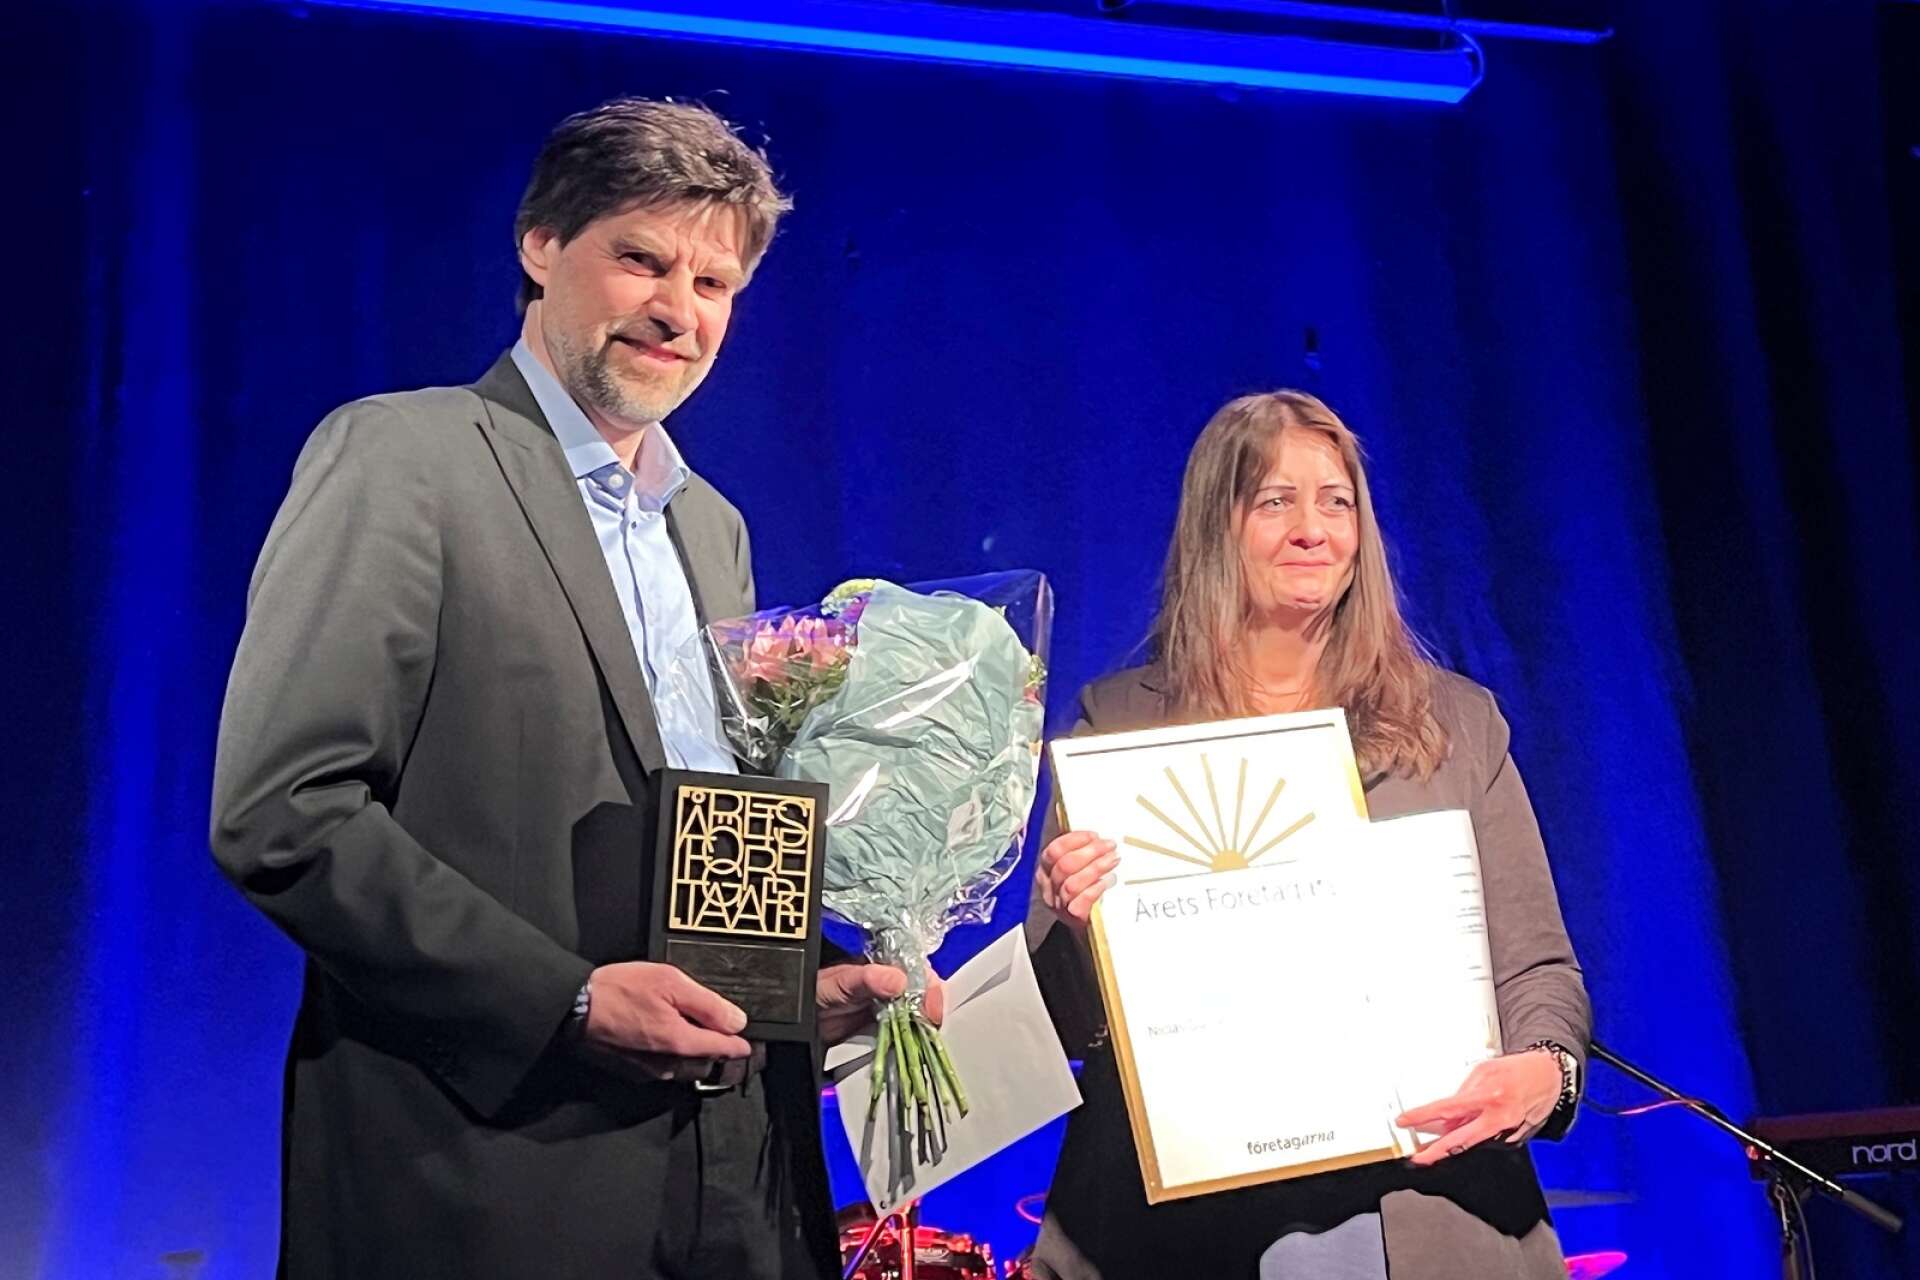 Niclas Gustafsson och Susanne Andersson från Electec Systems tog emot priset som Årets företagare för andra gången. Förra gången var för exakt 20 år sedan och sedan dess har företaget växt med 40 anställda.